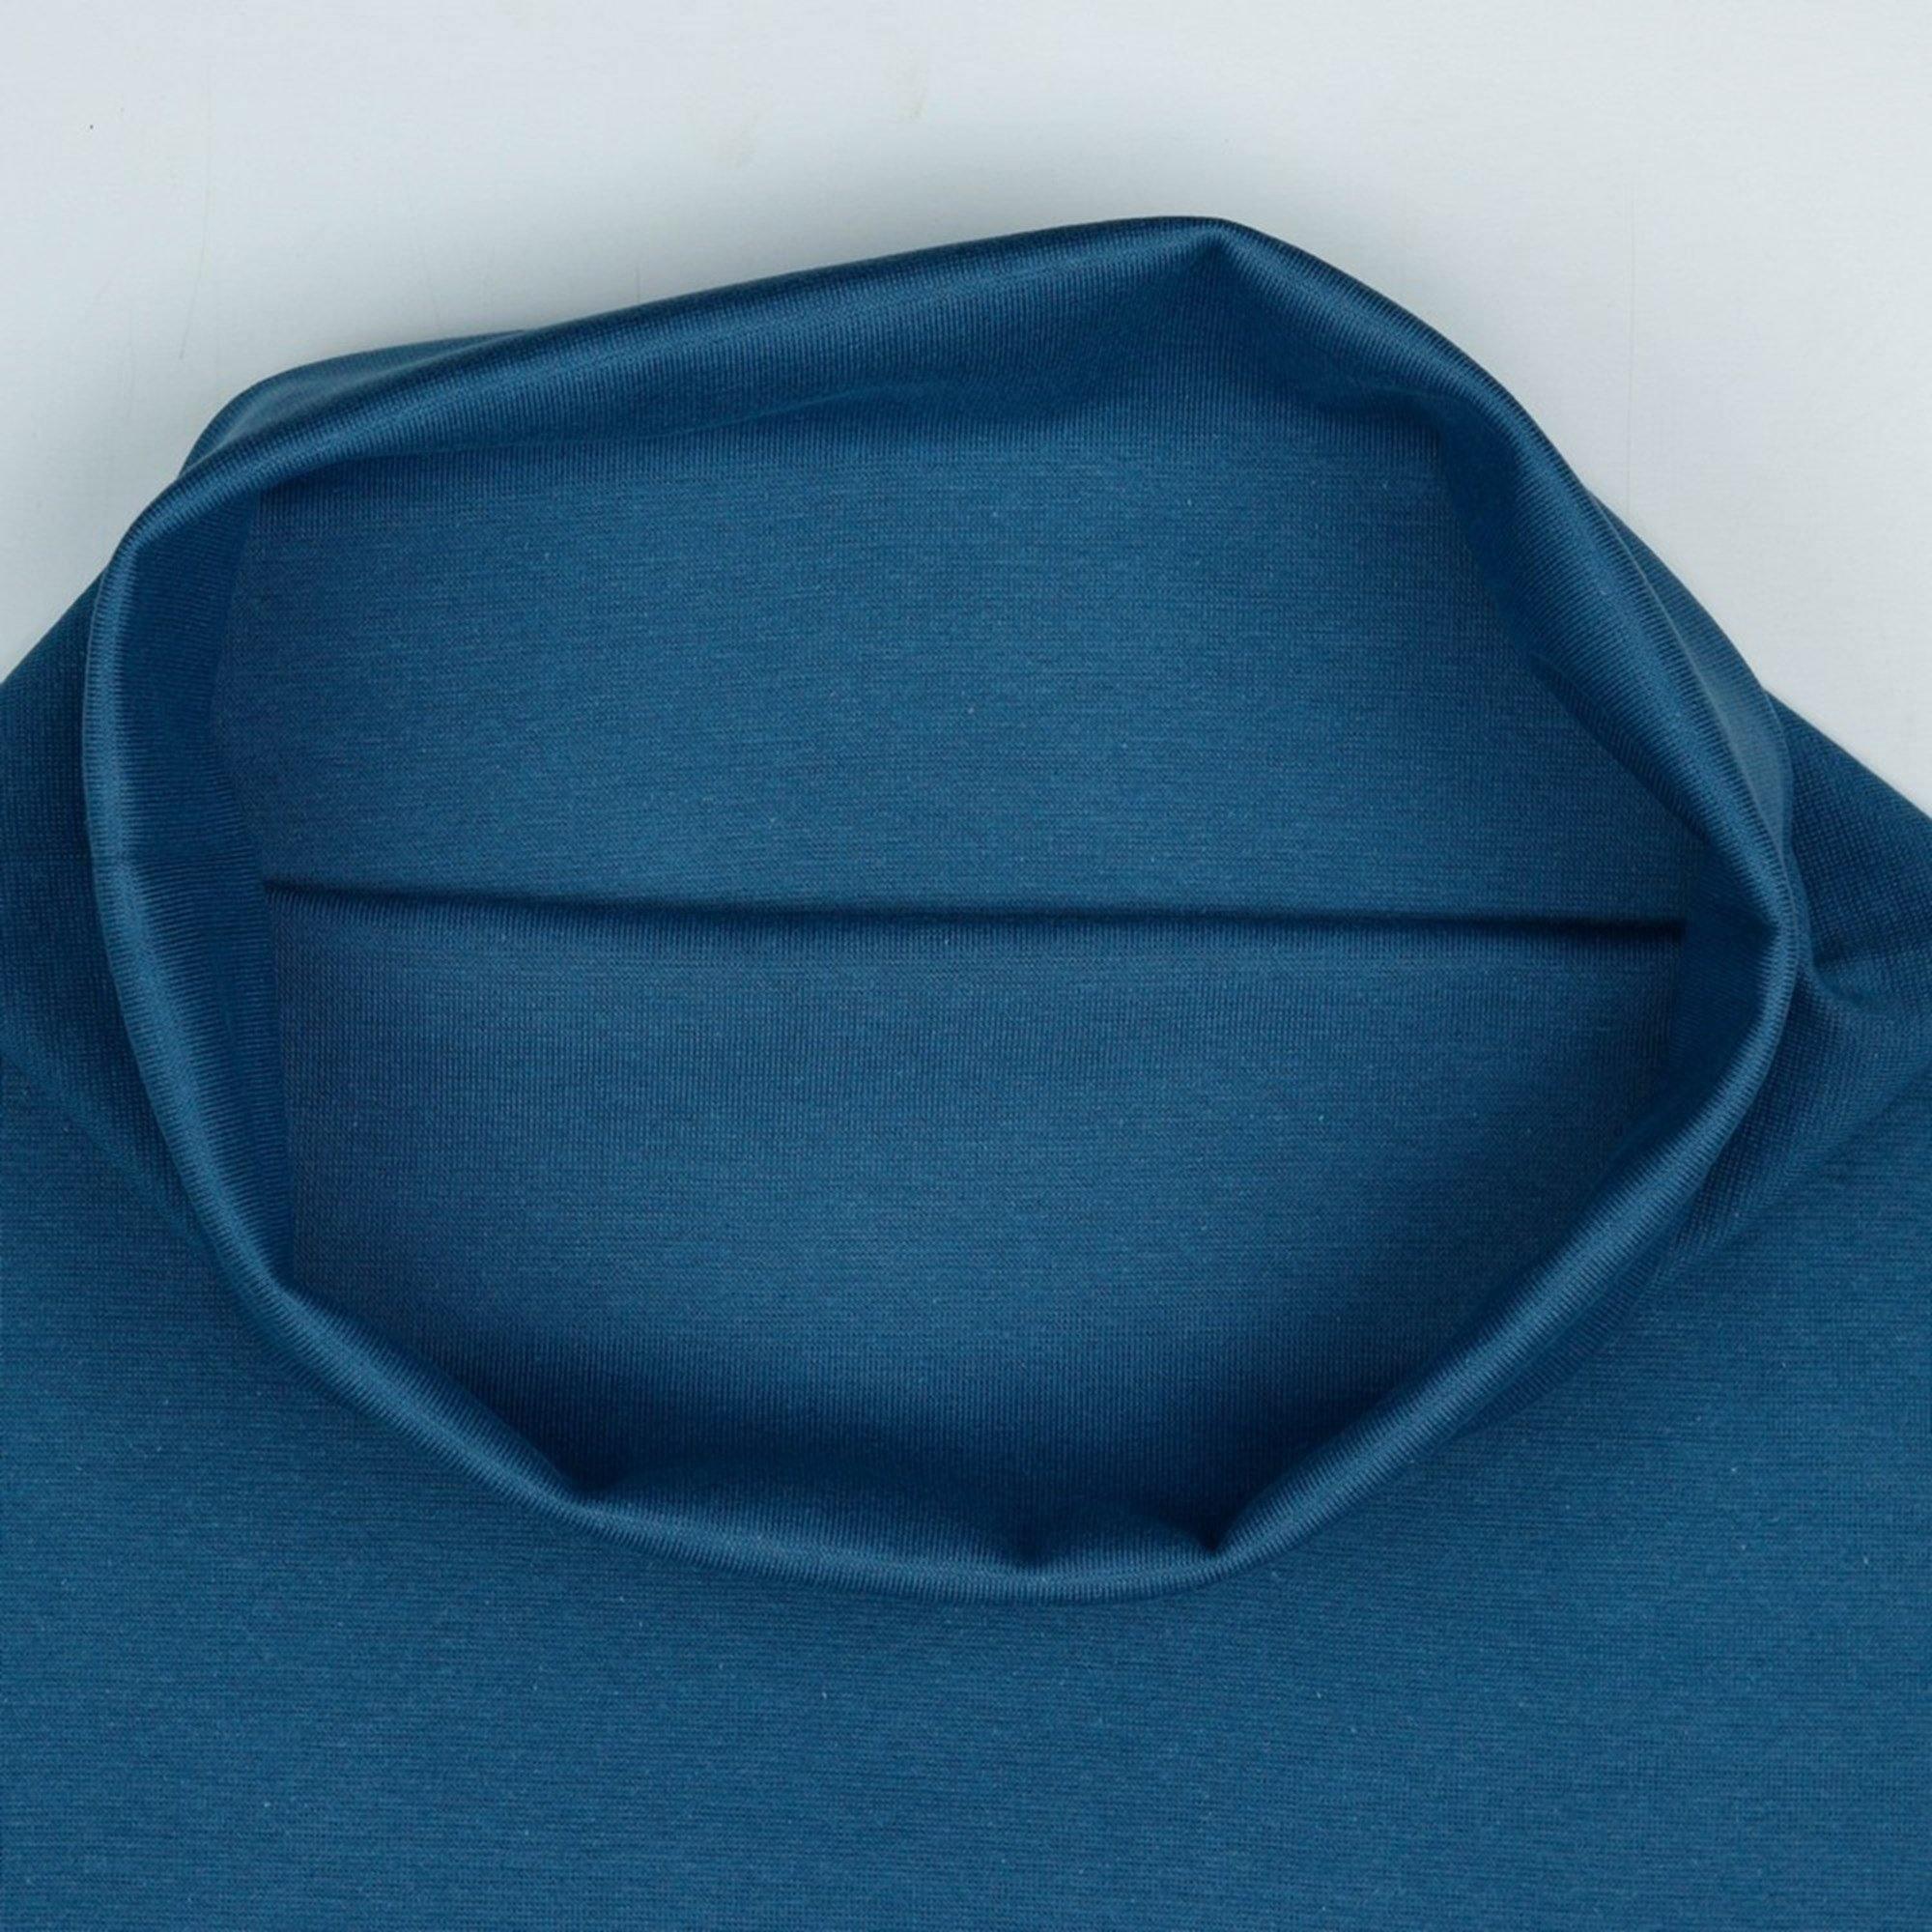 Organic Ribbing Fabric - Jeans Blue tubular rib-Organic Rib Knit-Jelly Fabrics